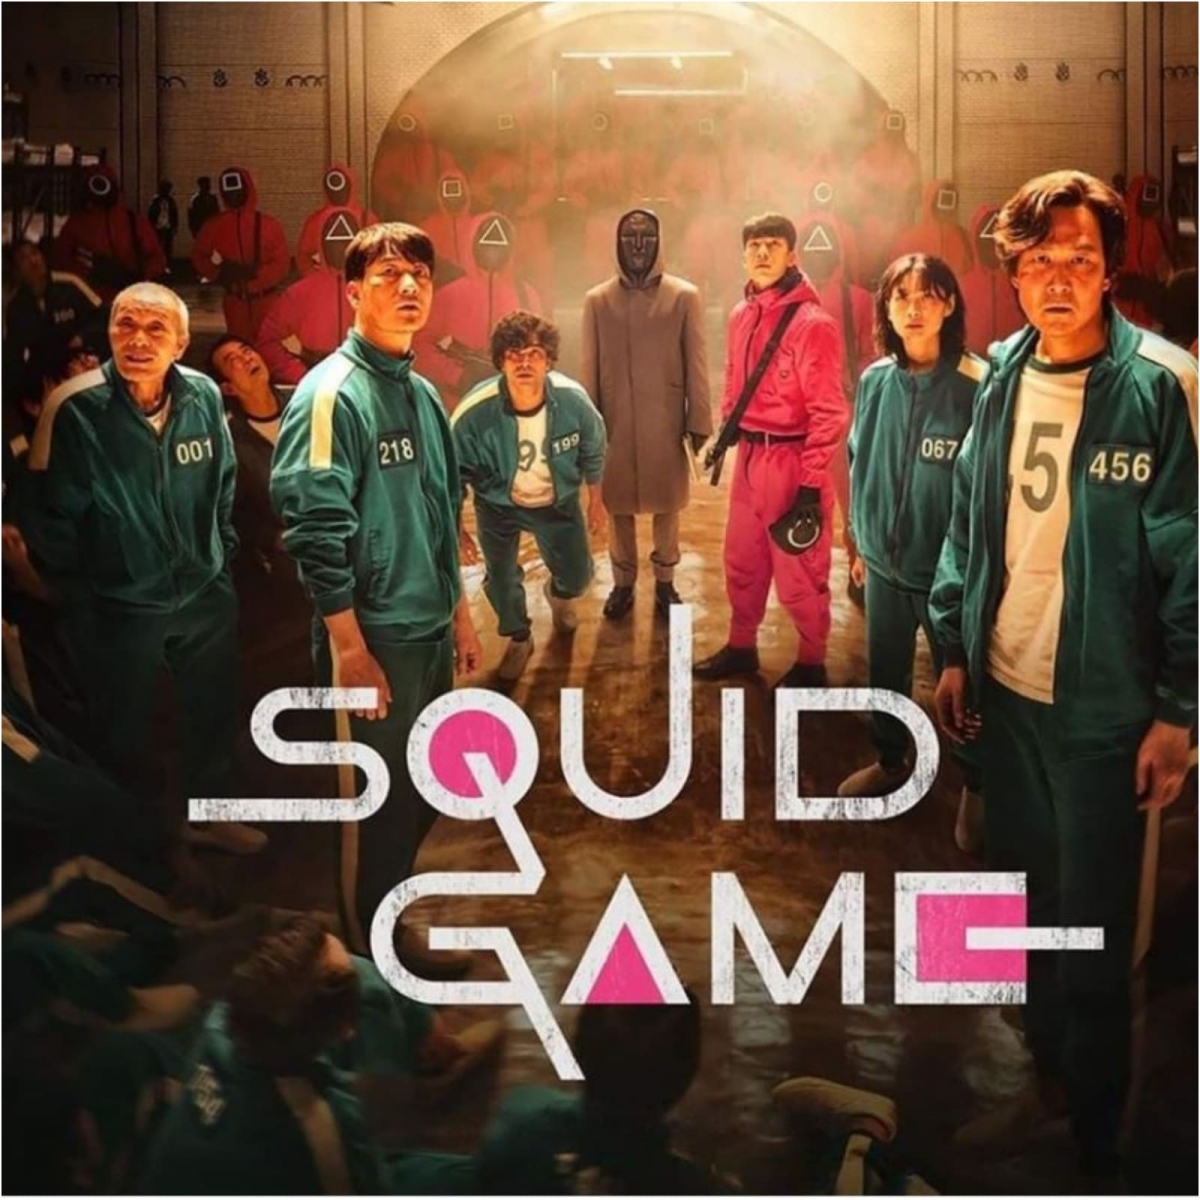 korean-survivalist-drama-squid-game.jpg